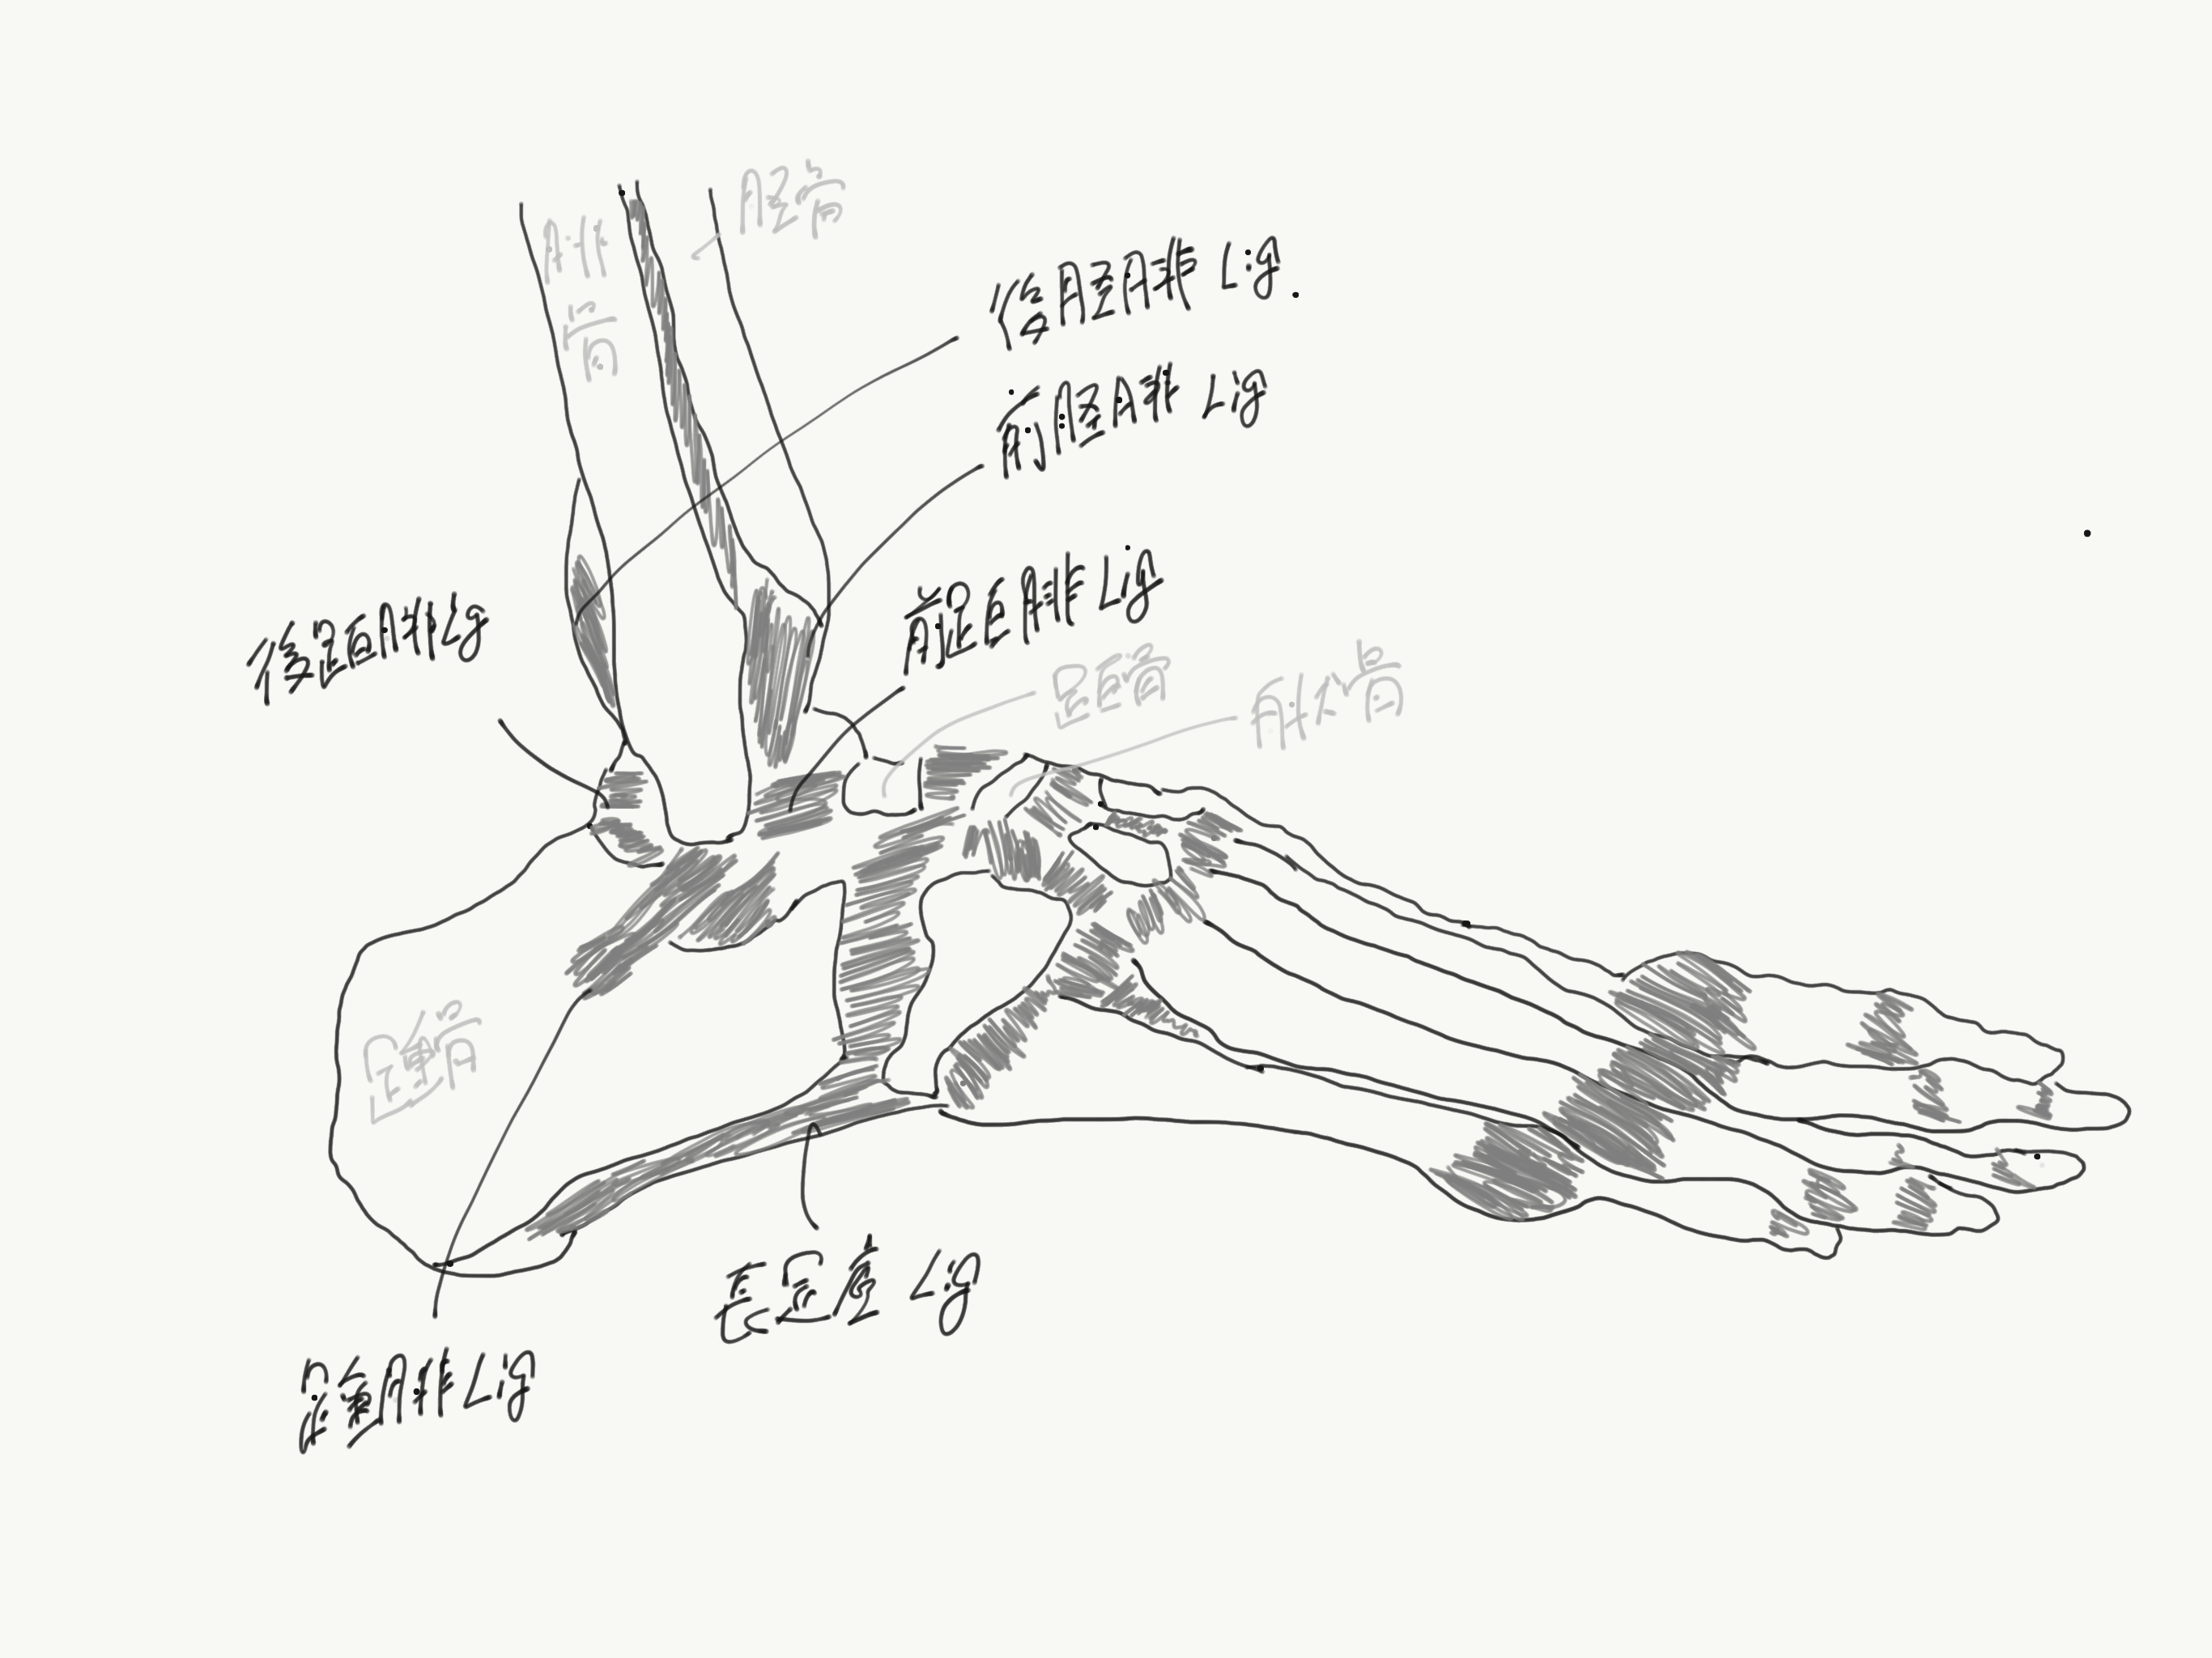 足関節内反捻挫の解剖学